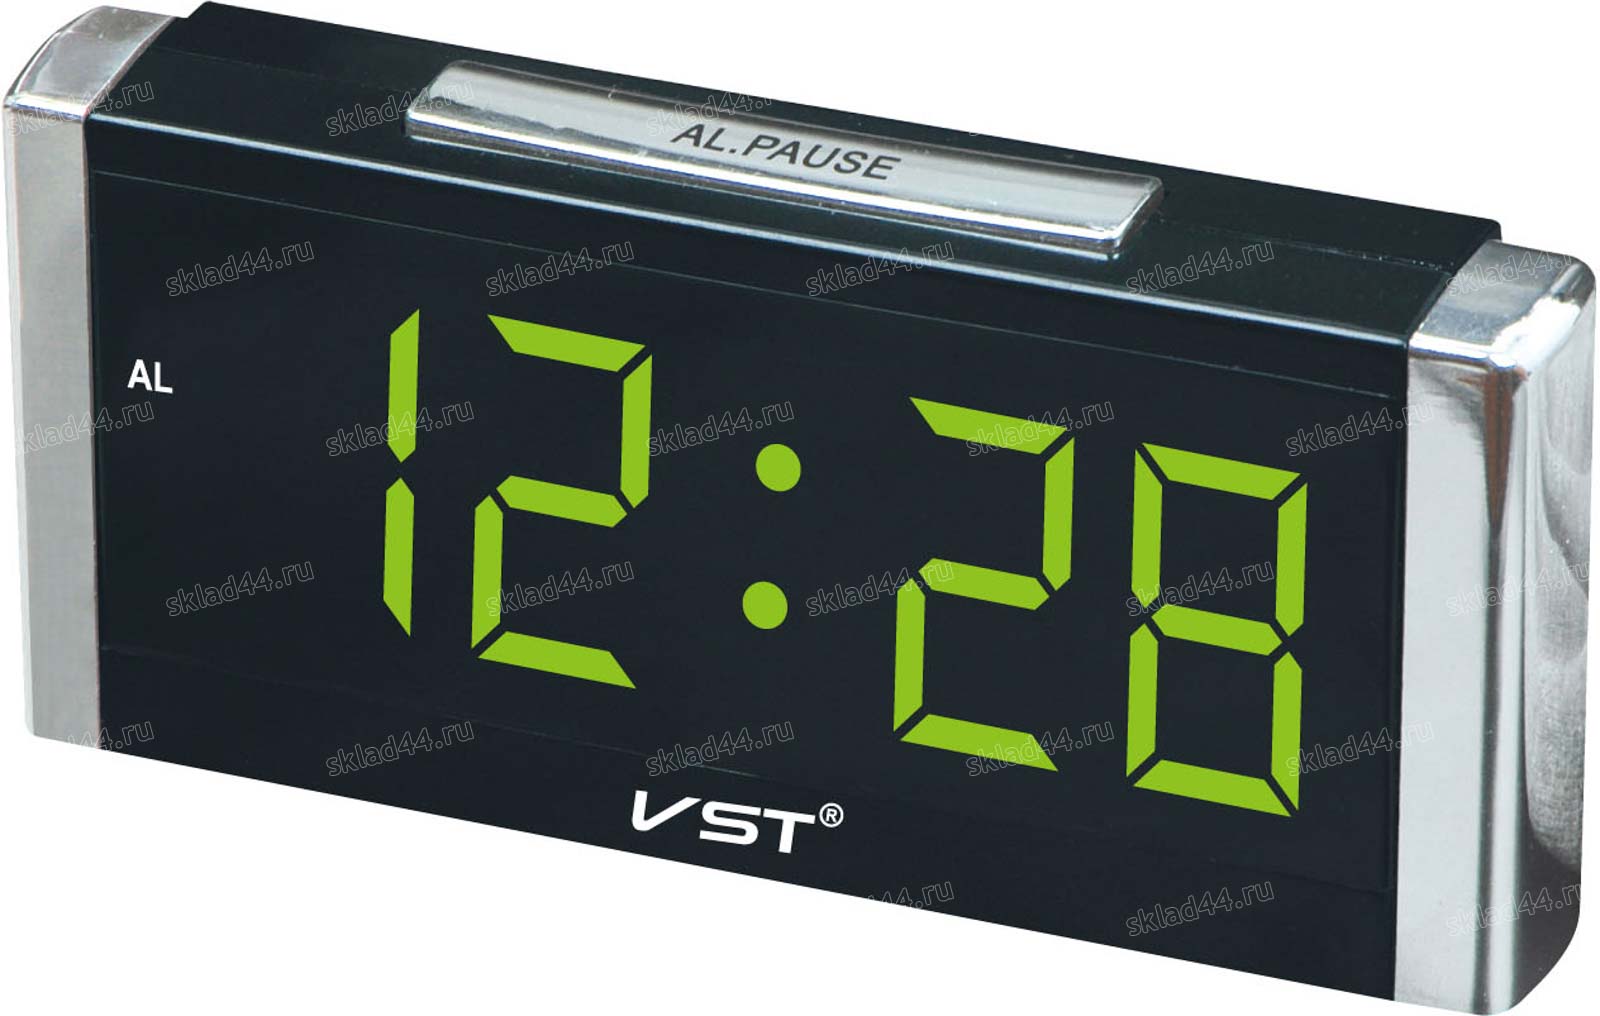 Купить настольные электронные часы в москве. Часы VST 731. Электронные часы VST 731w. Vst731-1. Электронные часы VST-731w-4 (черные с ярко-зелеными цифрами).